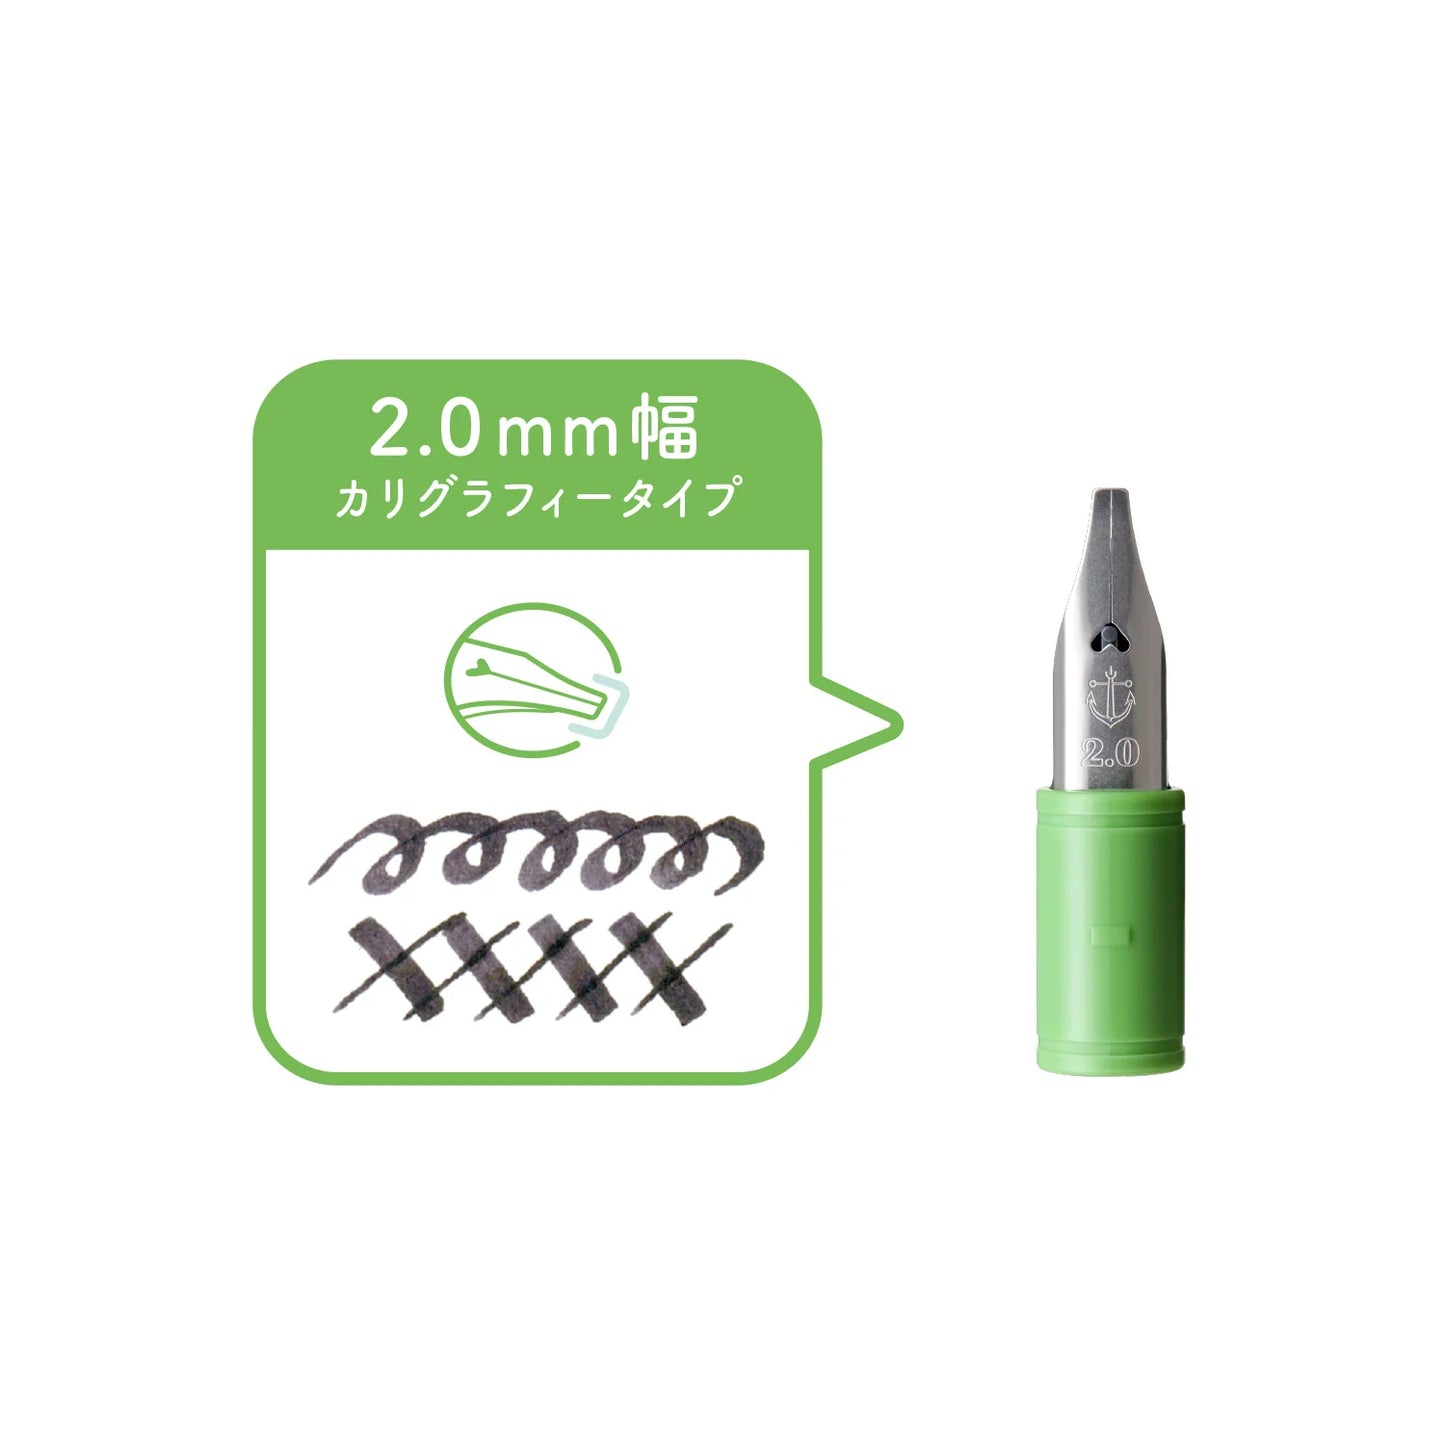 SAILOR, hocoro Dip Pen, Exchangeable Nib 2.0mm